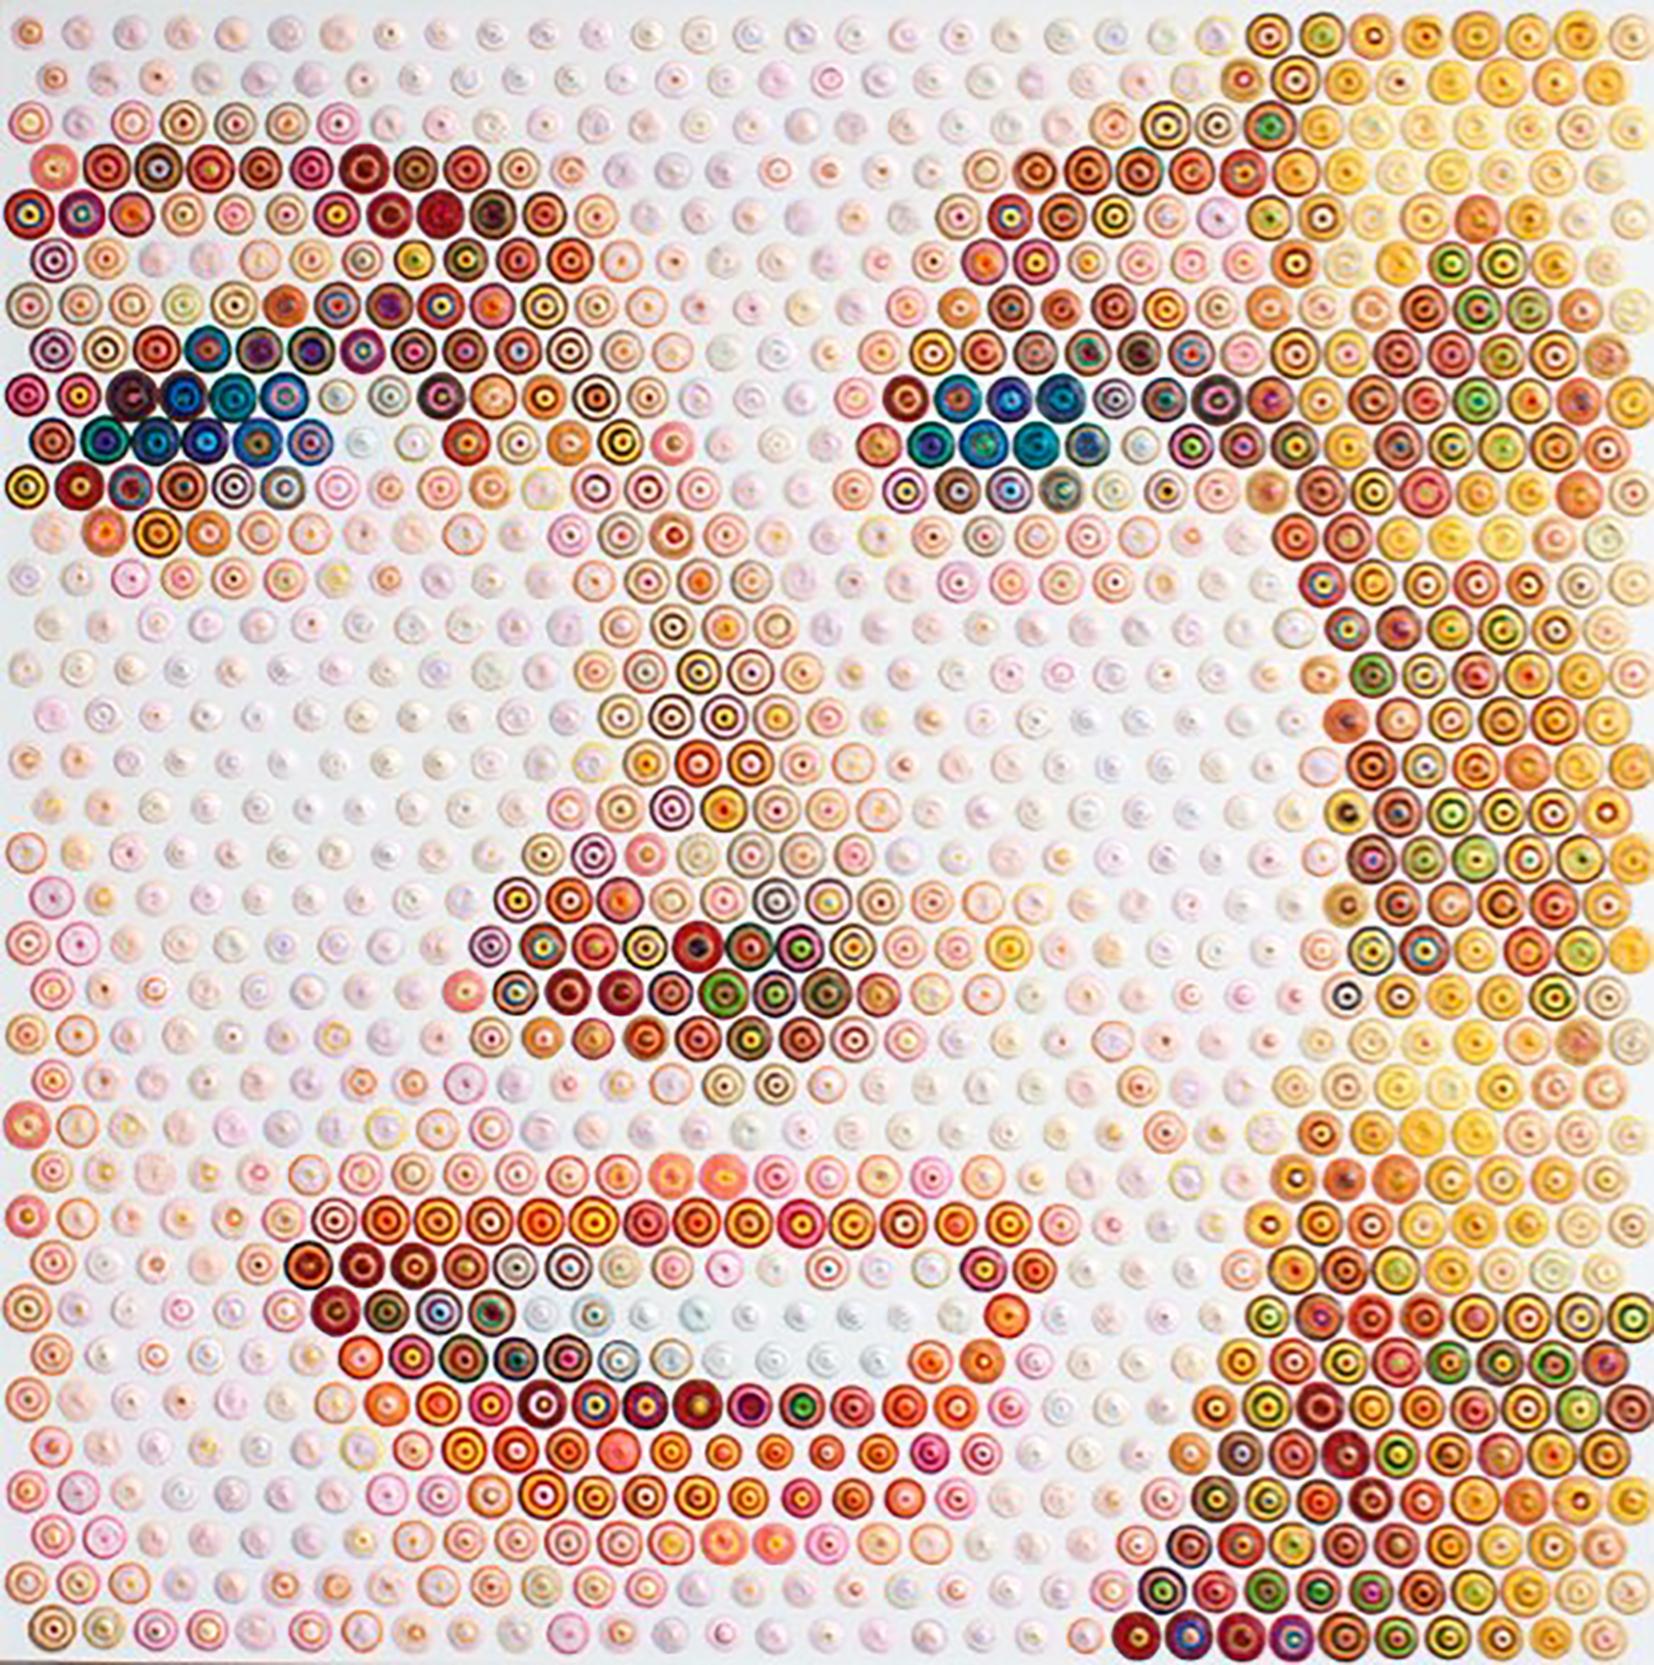 Princess Grace - 21st Century, Contemporary, Figurative Painting, Portrait, Dots